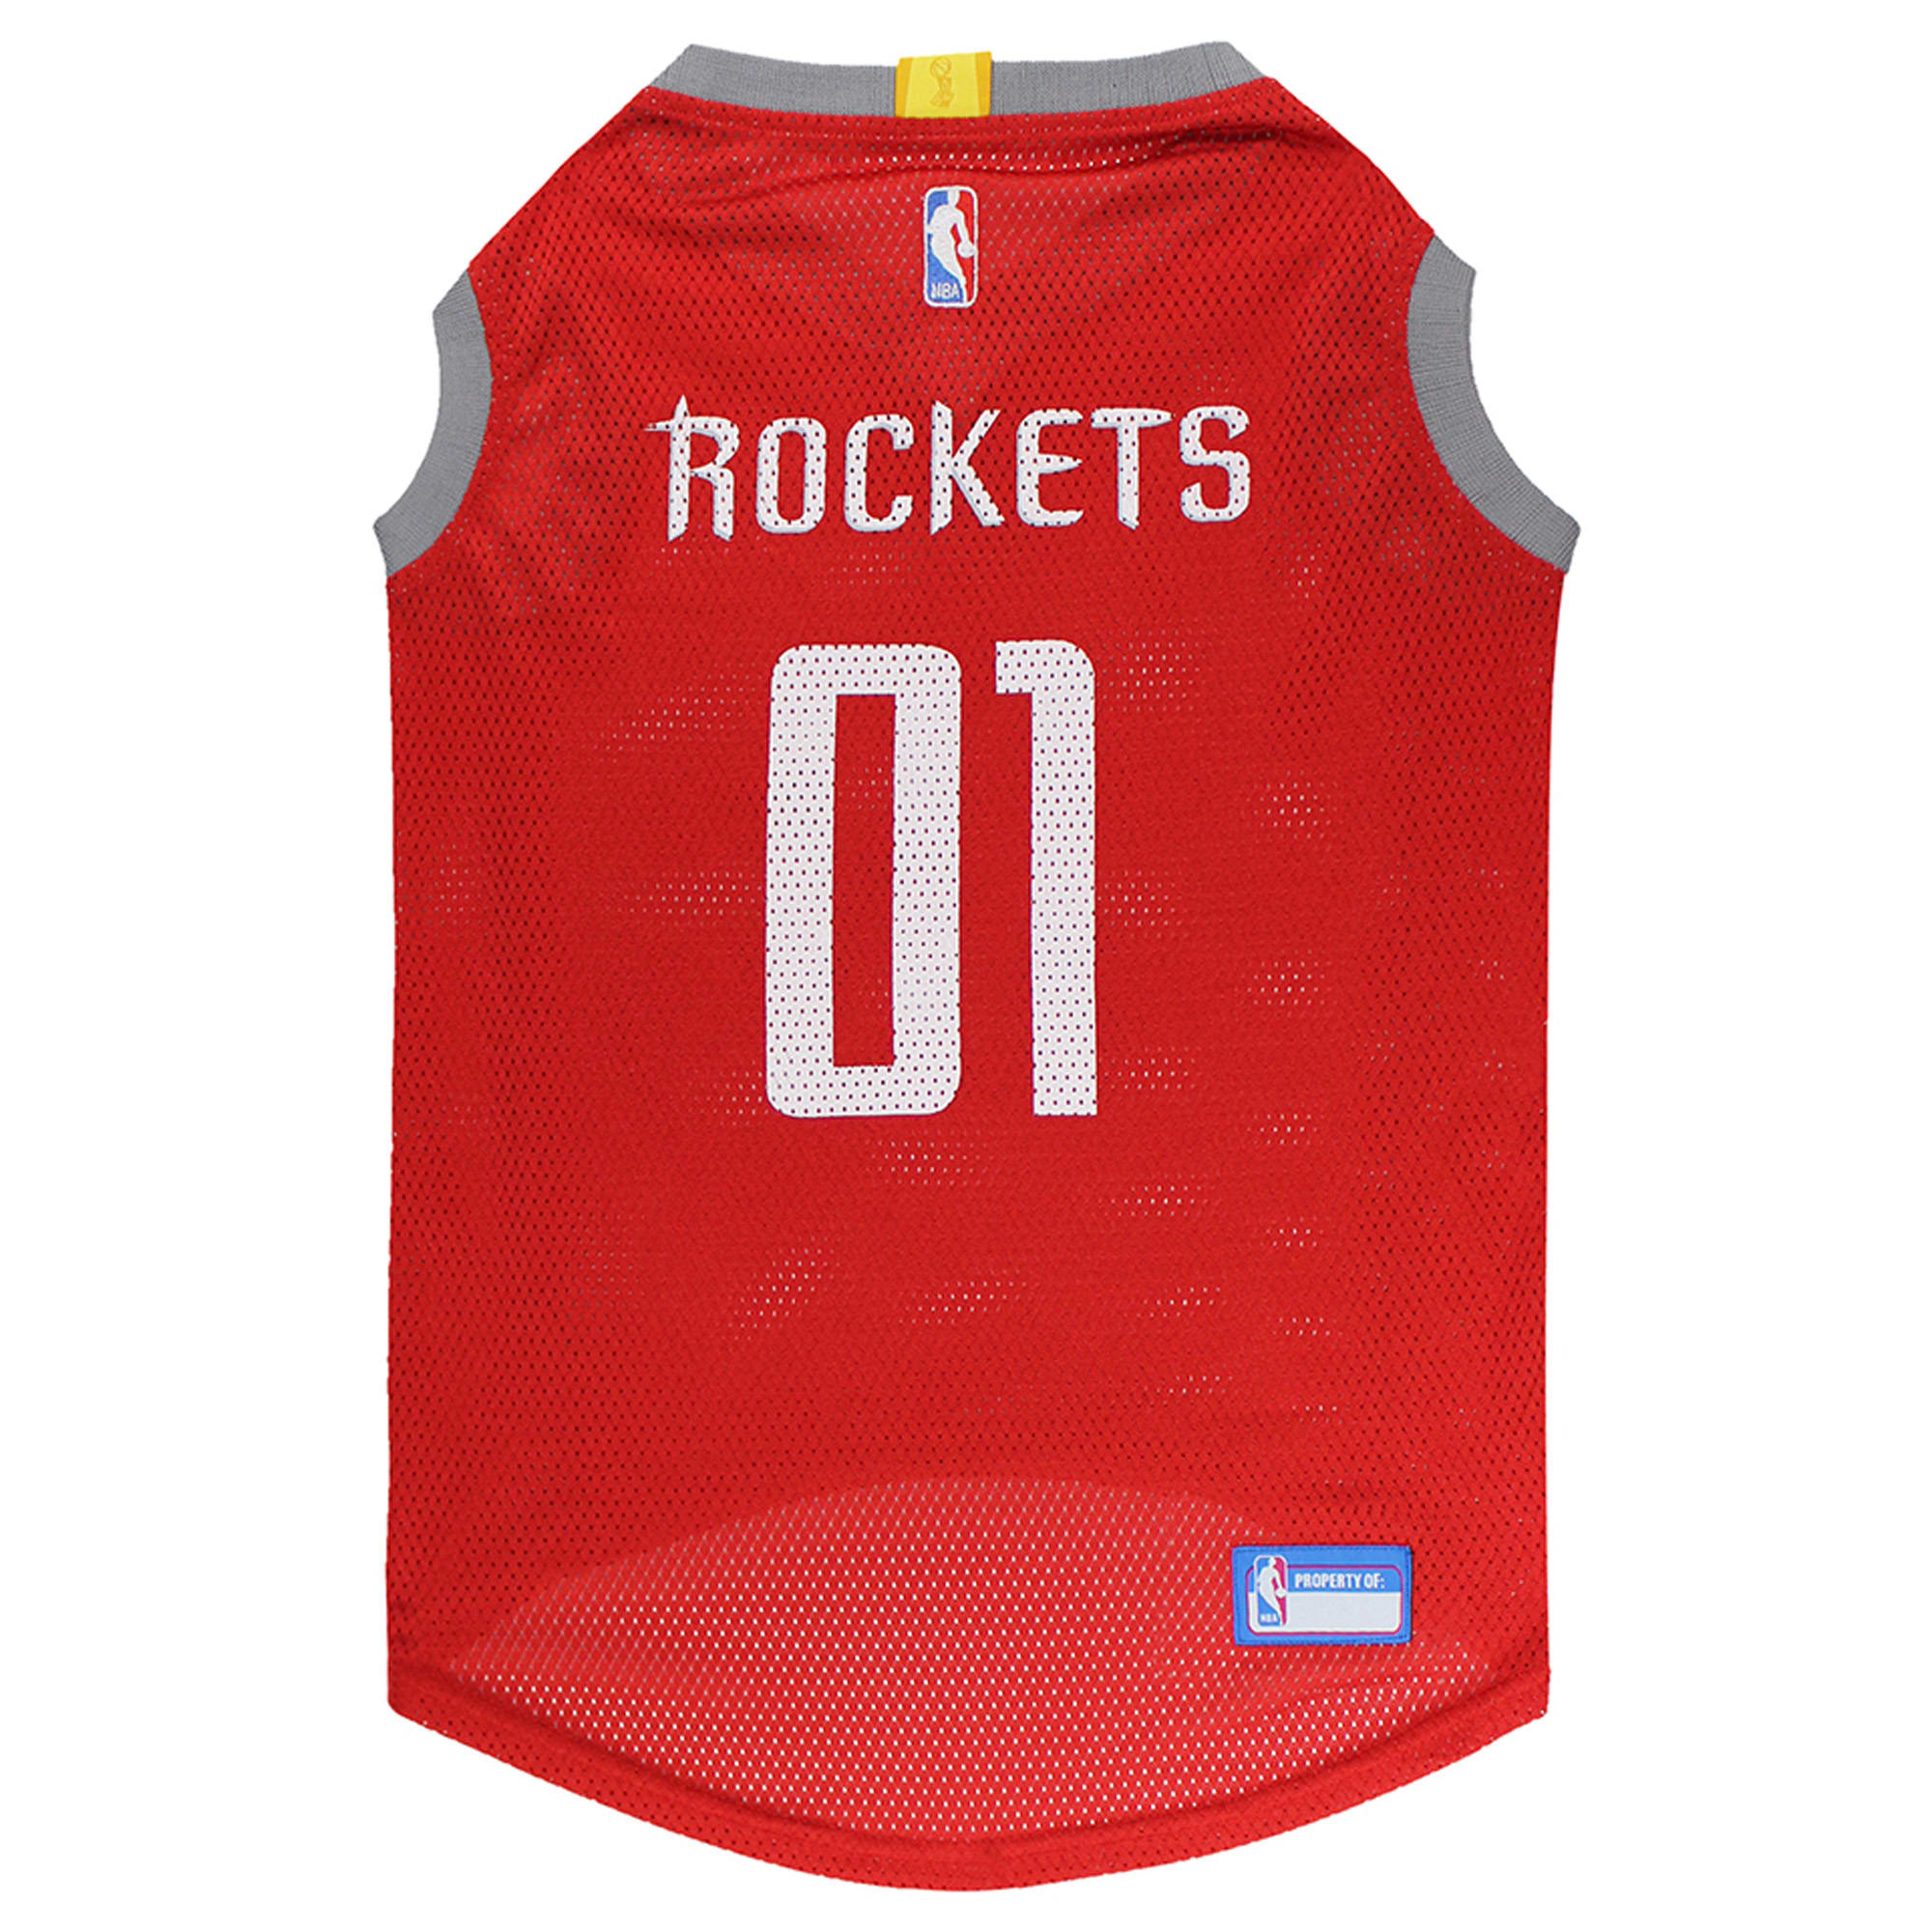 rockets basketball jersey